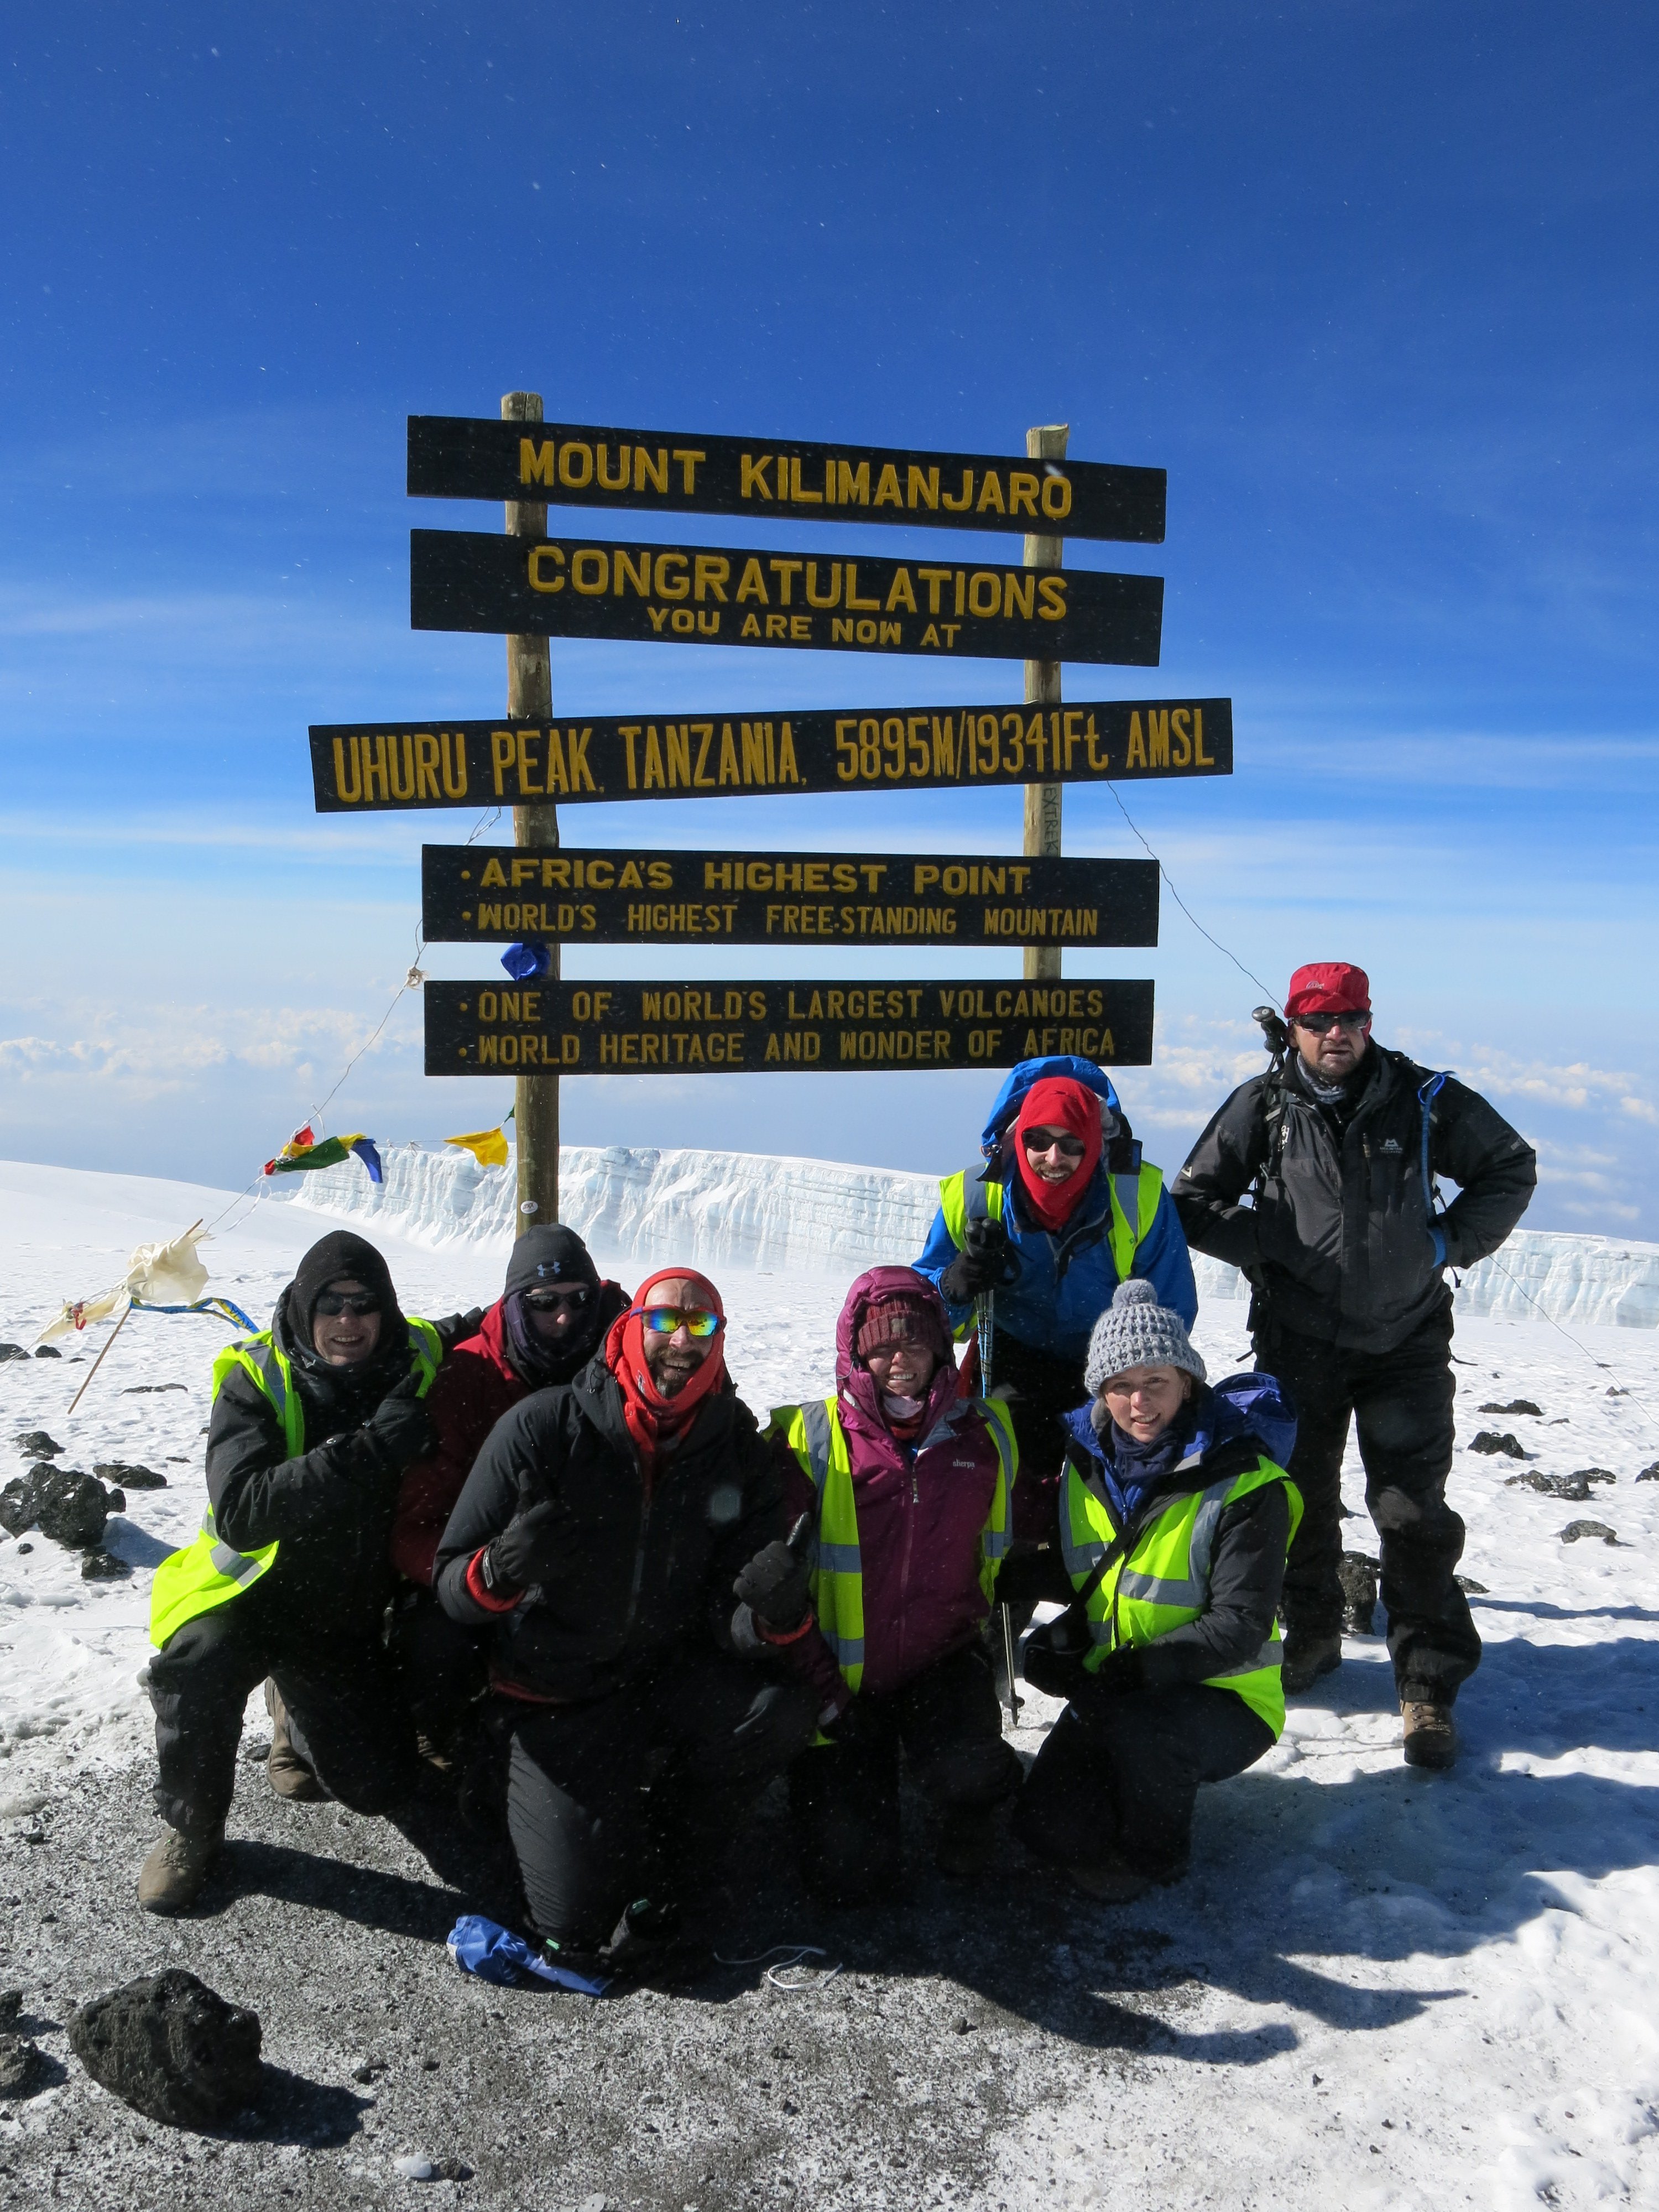 Uhuru_Peak_summit_of_Kilimanjaro-1.jpg